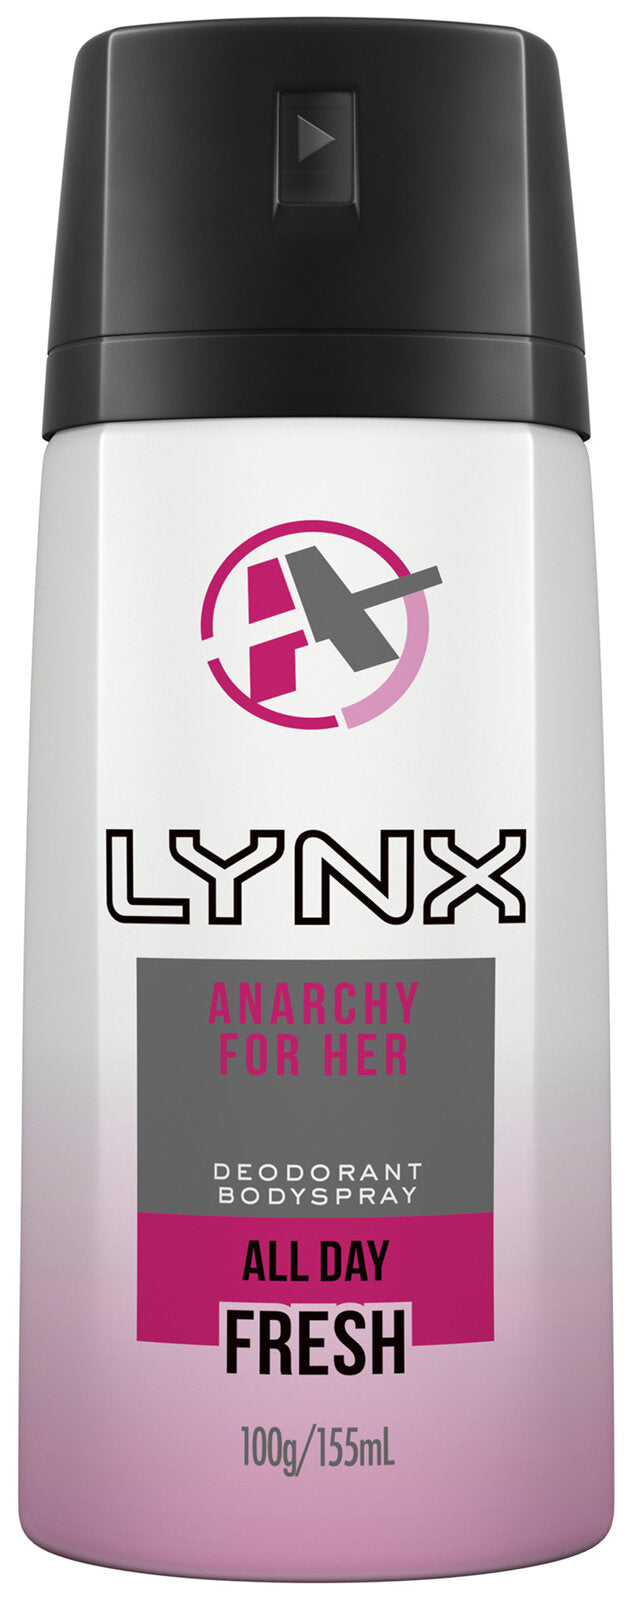 Lynx Deodorant Anarchy For Her 155ml